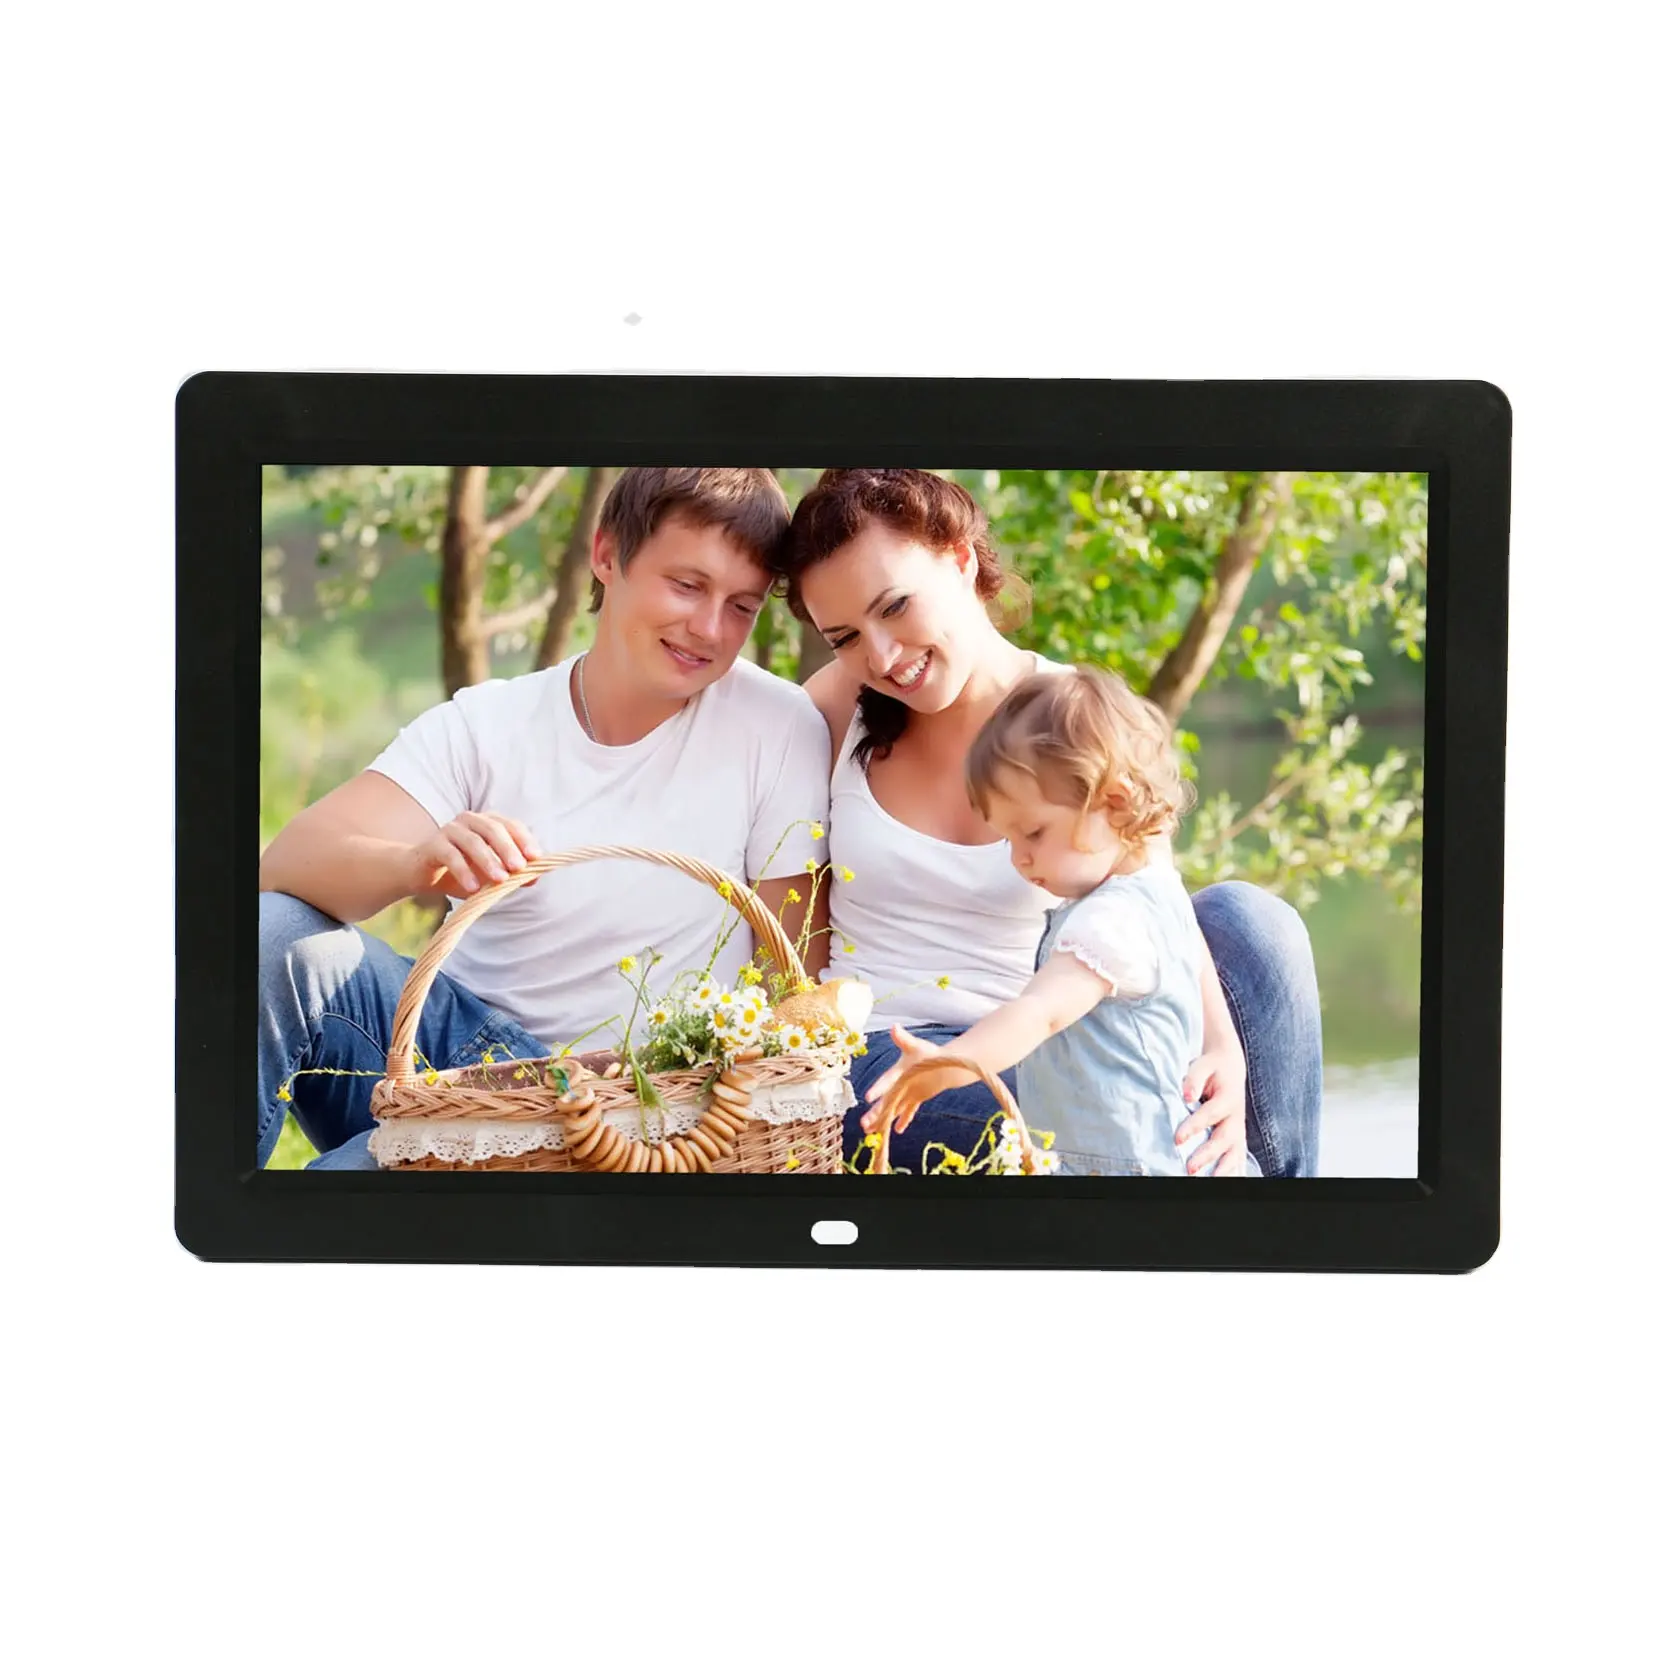 12.1 "pouces écran large LCD lecteur vidéo multimédia moniteur appui HD 1080 P et paysage/portrait mode d'affichage complet viewangle